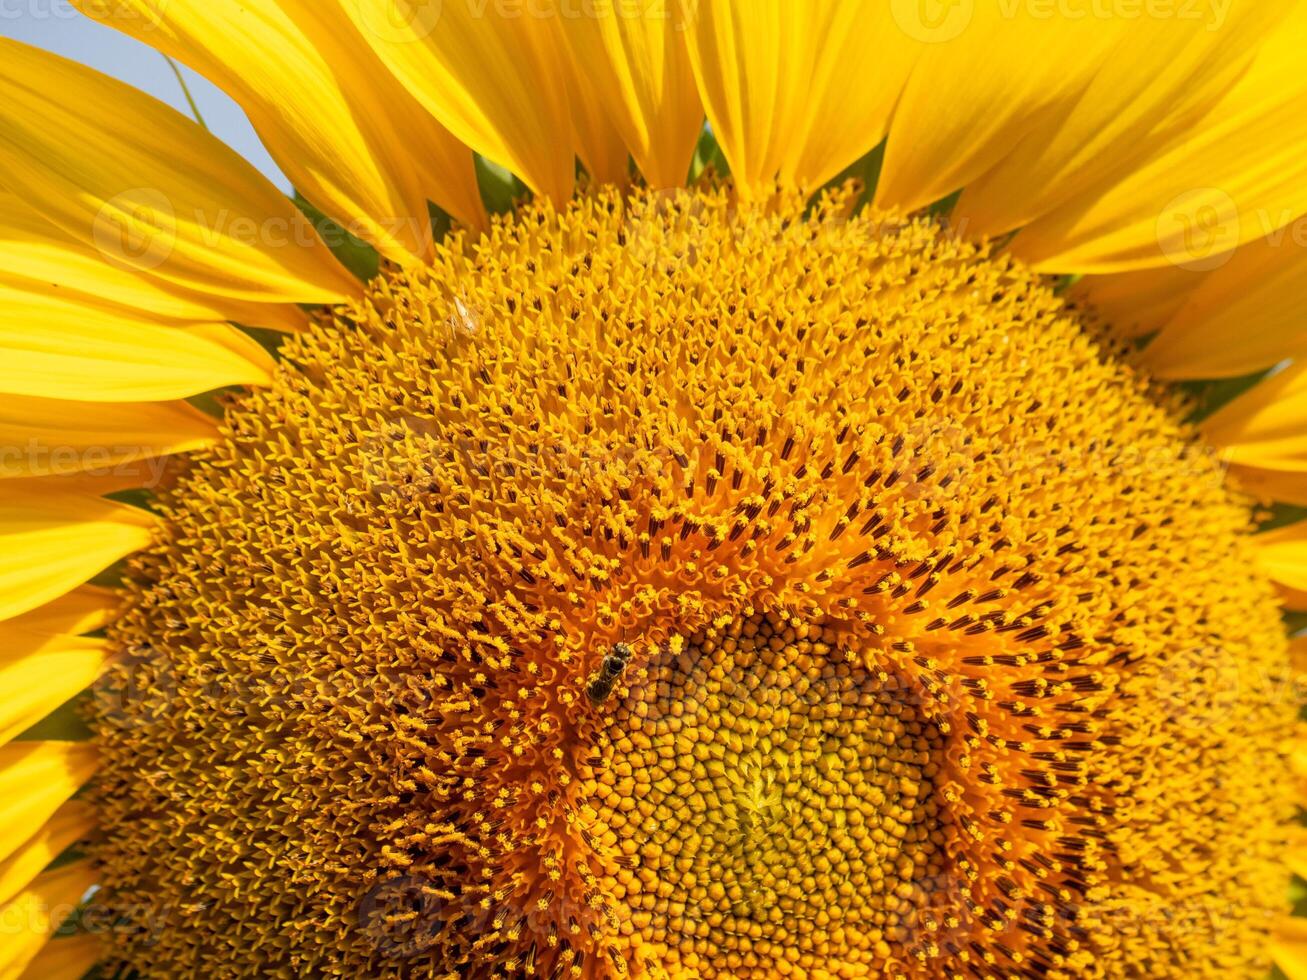 abelha coleta néctar a partir de uma girassol foto